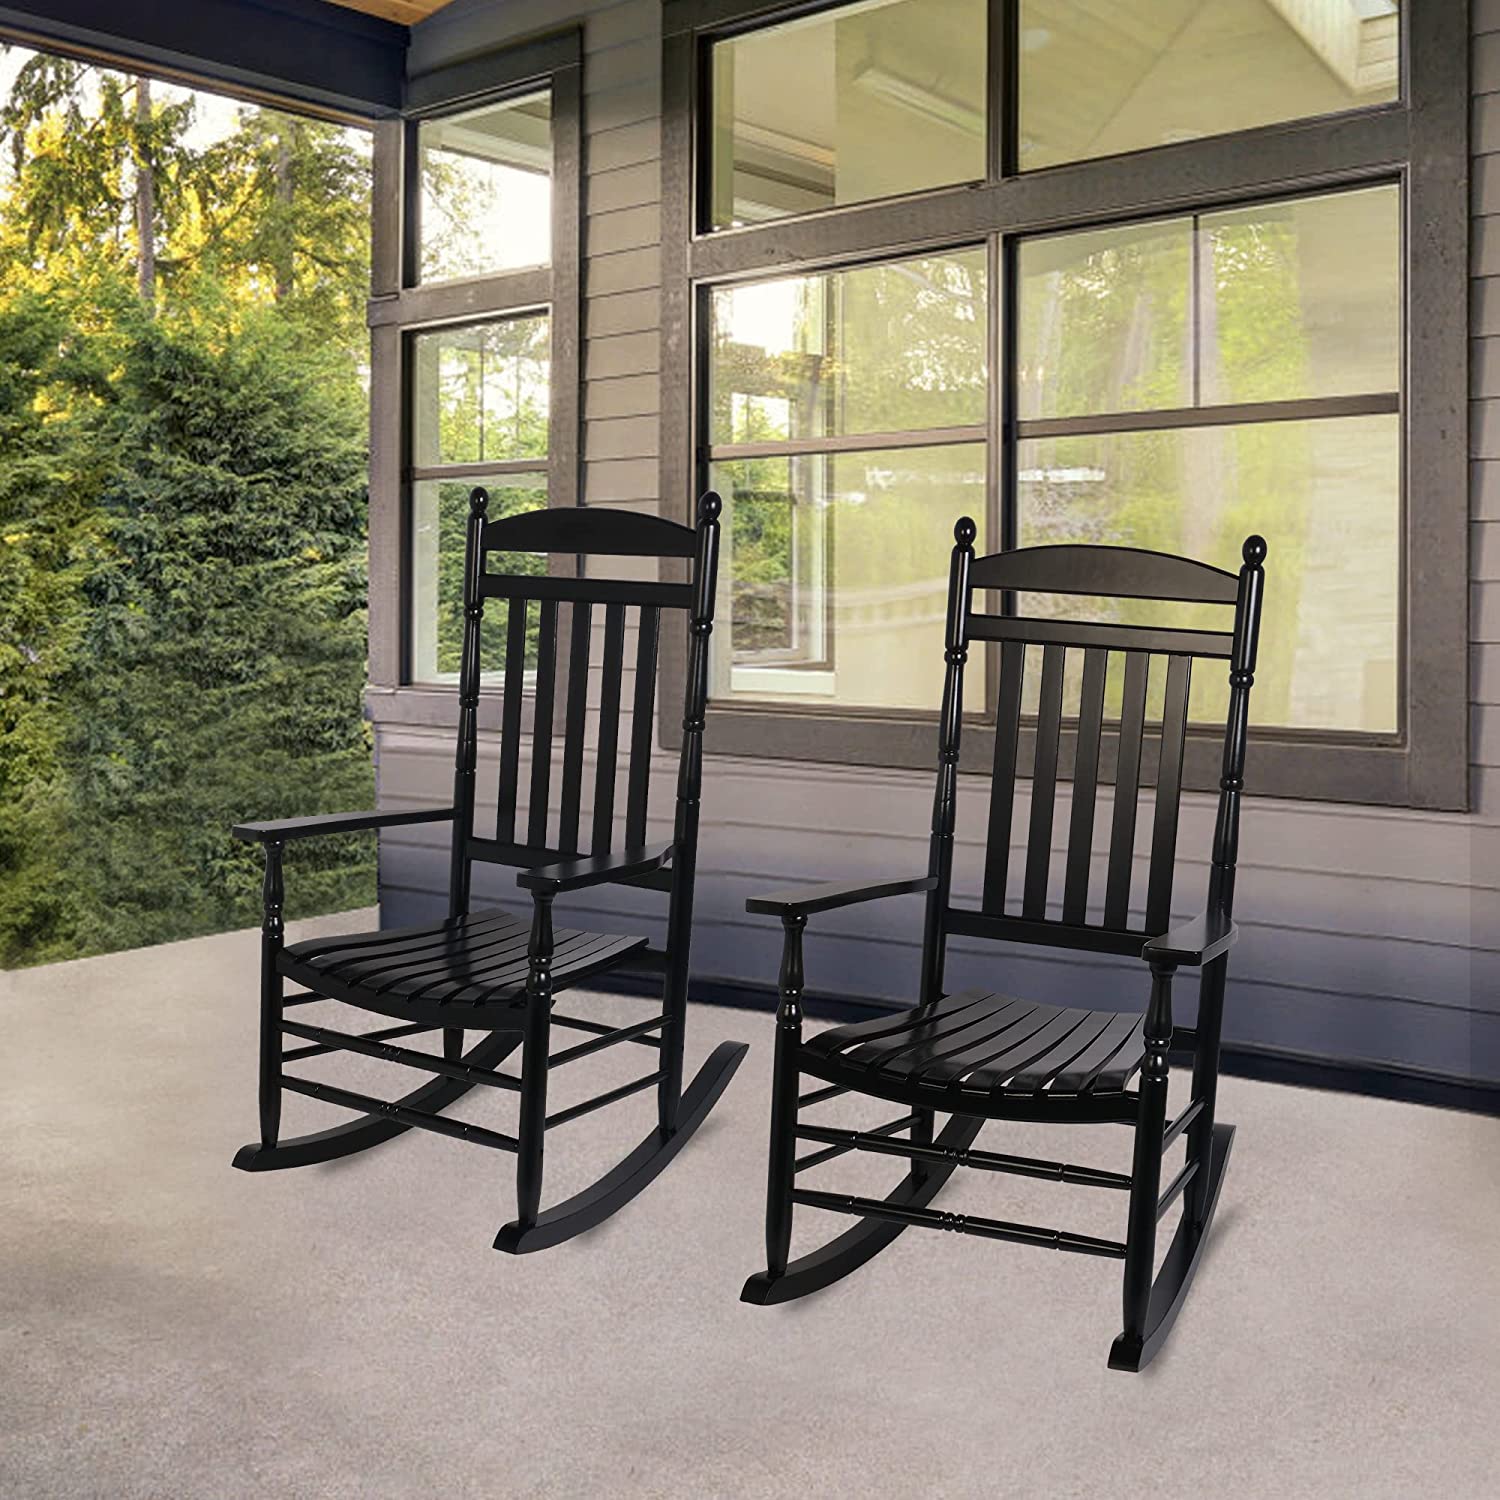 Set of 2 Outdoor Rocking Chairs, Outdoor Indoor Oversized Patio Rocker Chair High Back Rocker, Black